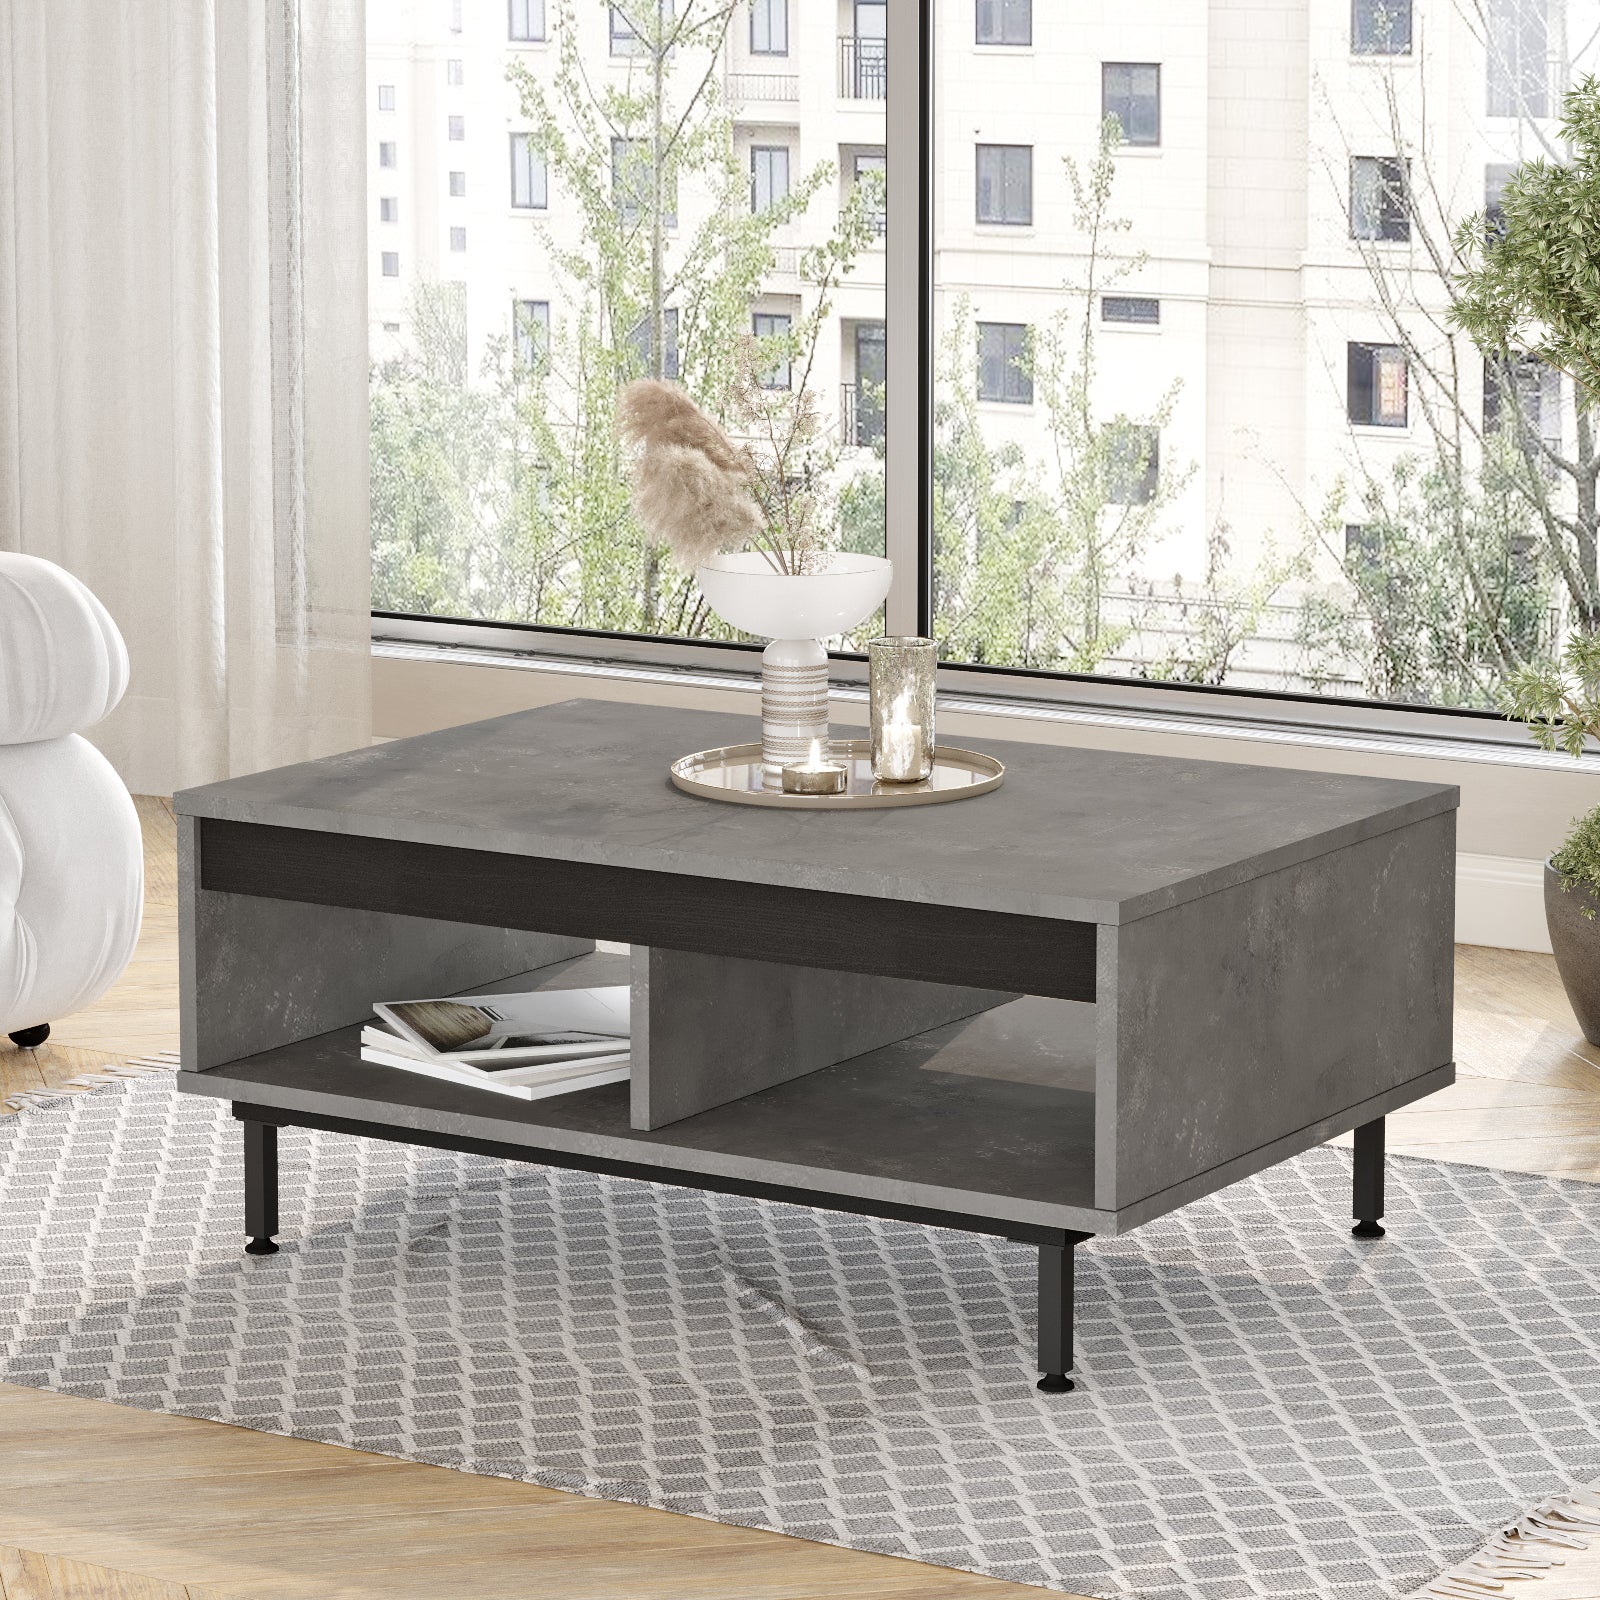 bois gris-Table basse 'DIONE' avec des accessoires de décoration-intégrée dans un salon lumineux et accueillant.